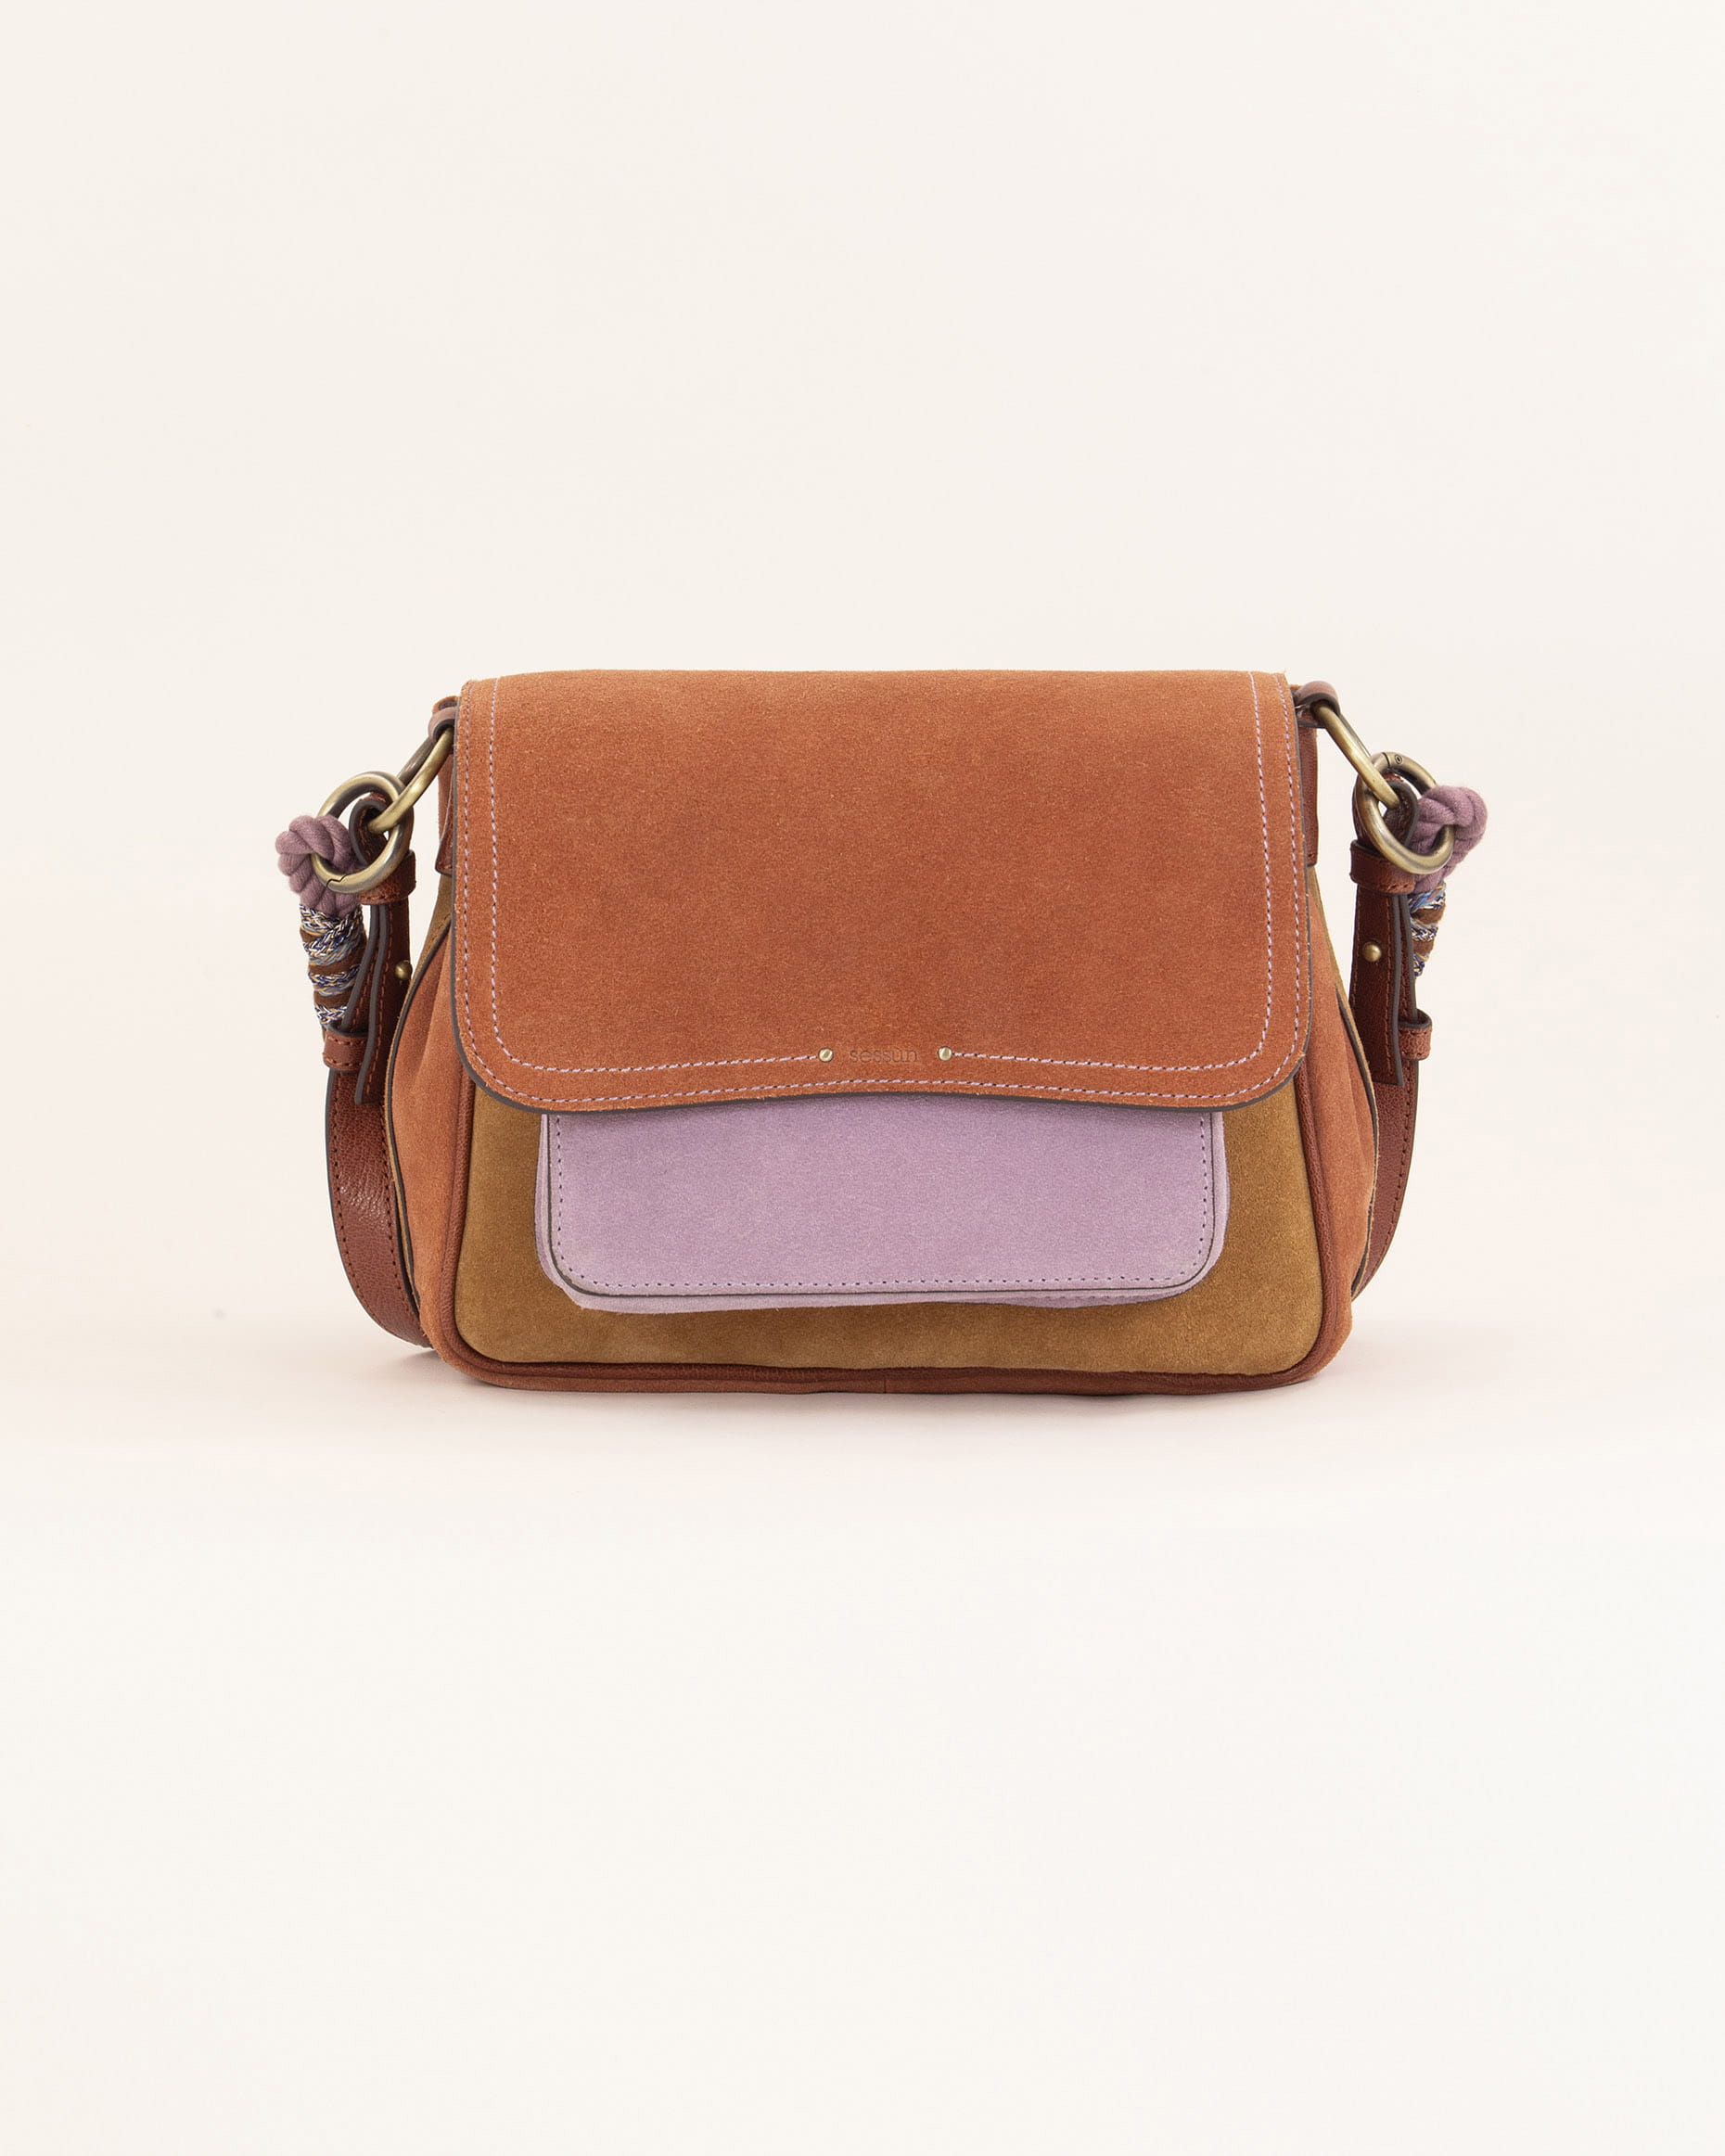 Star Wars Ahsoka Tano Close Up Bag and Wallet | BoxLunch